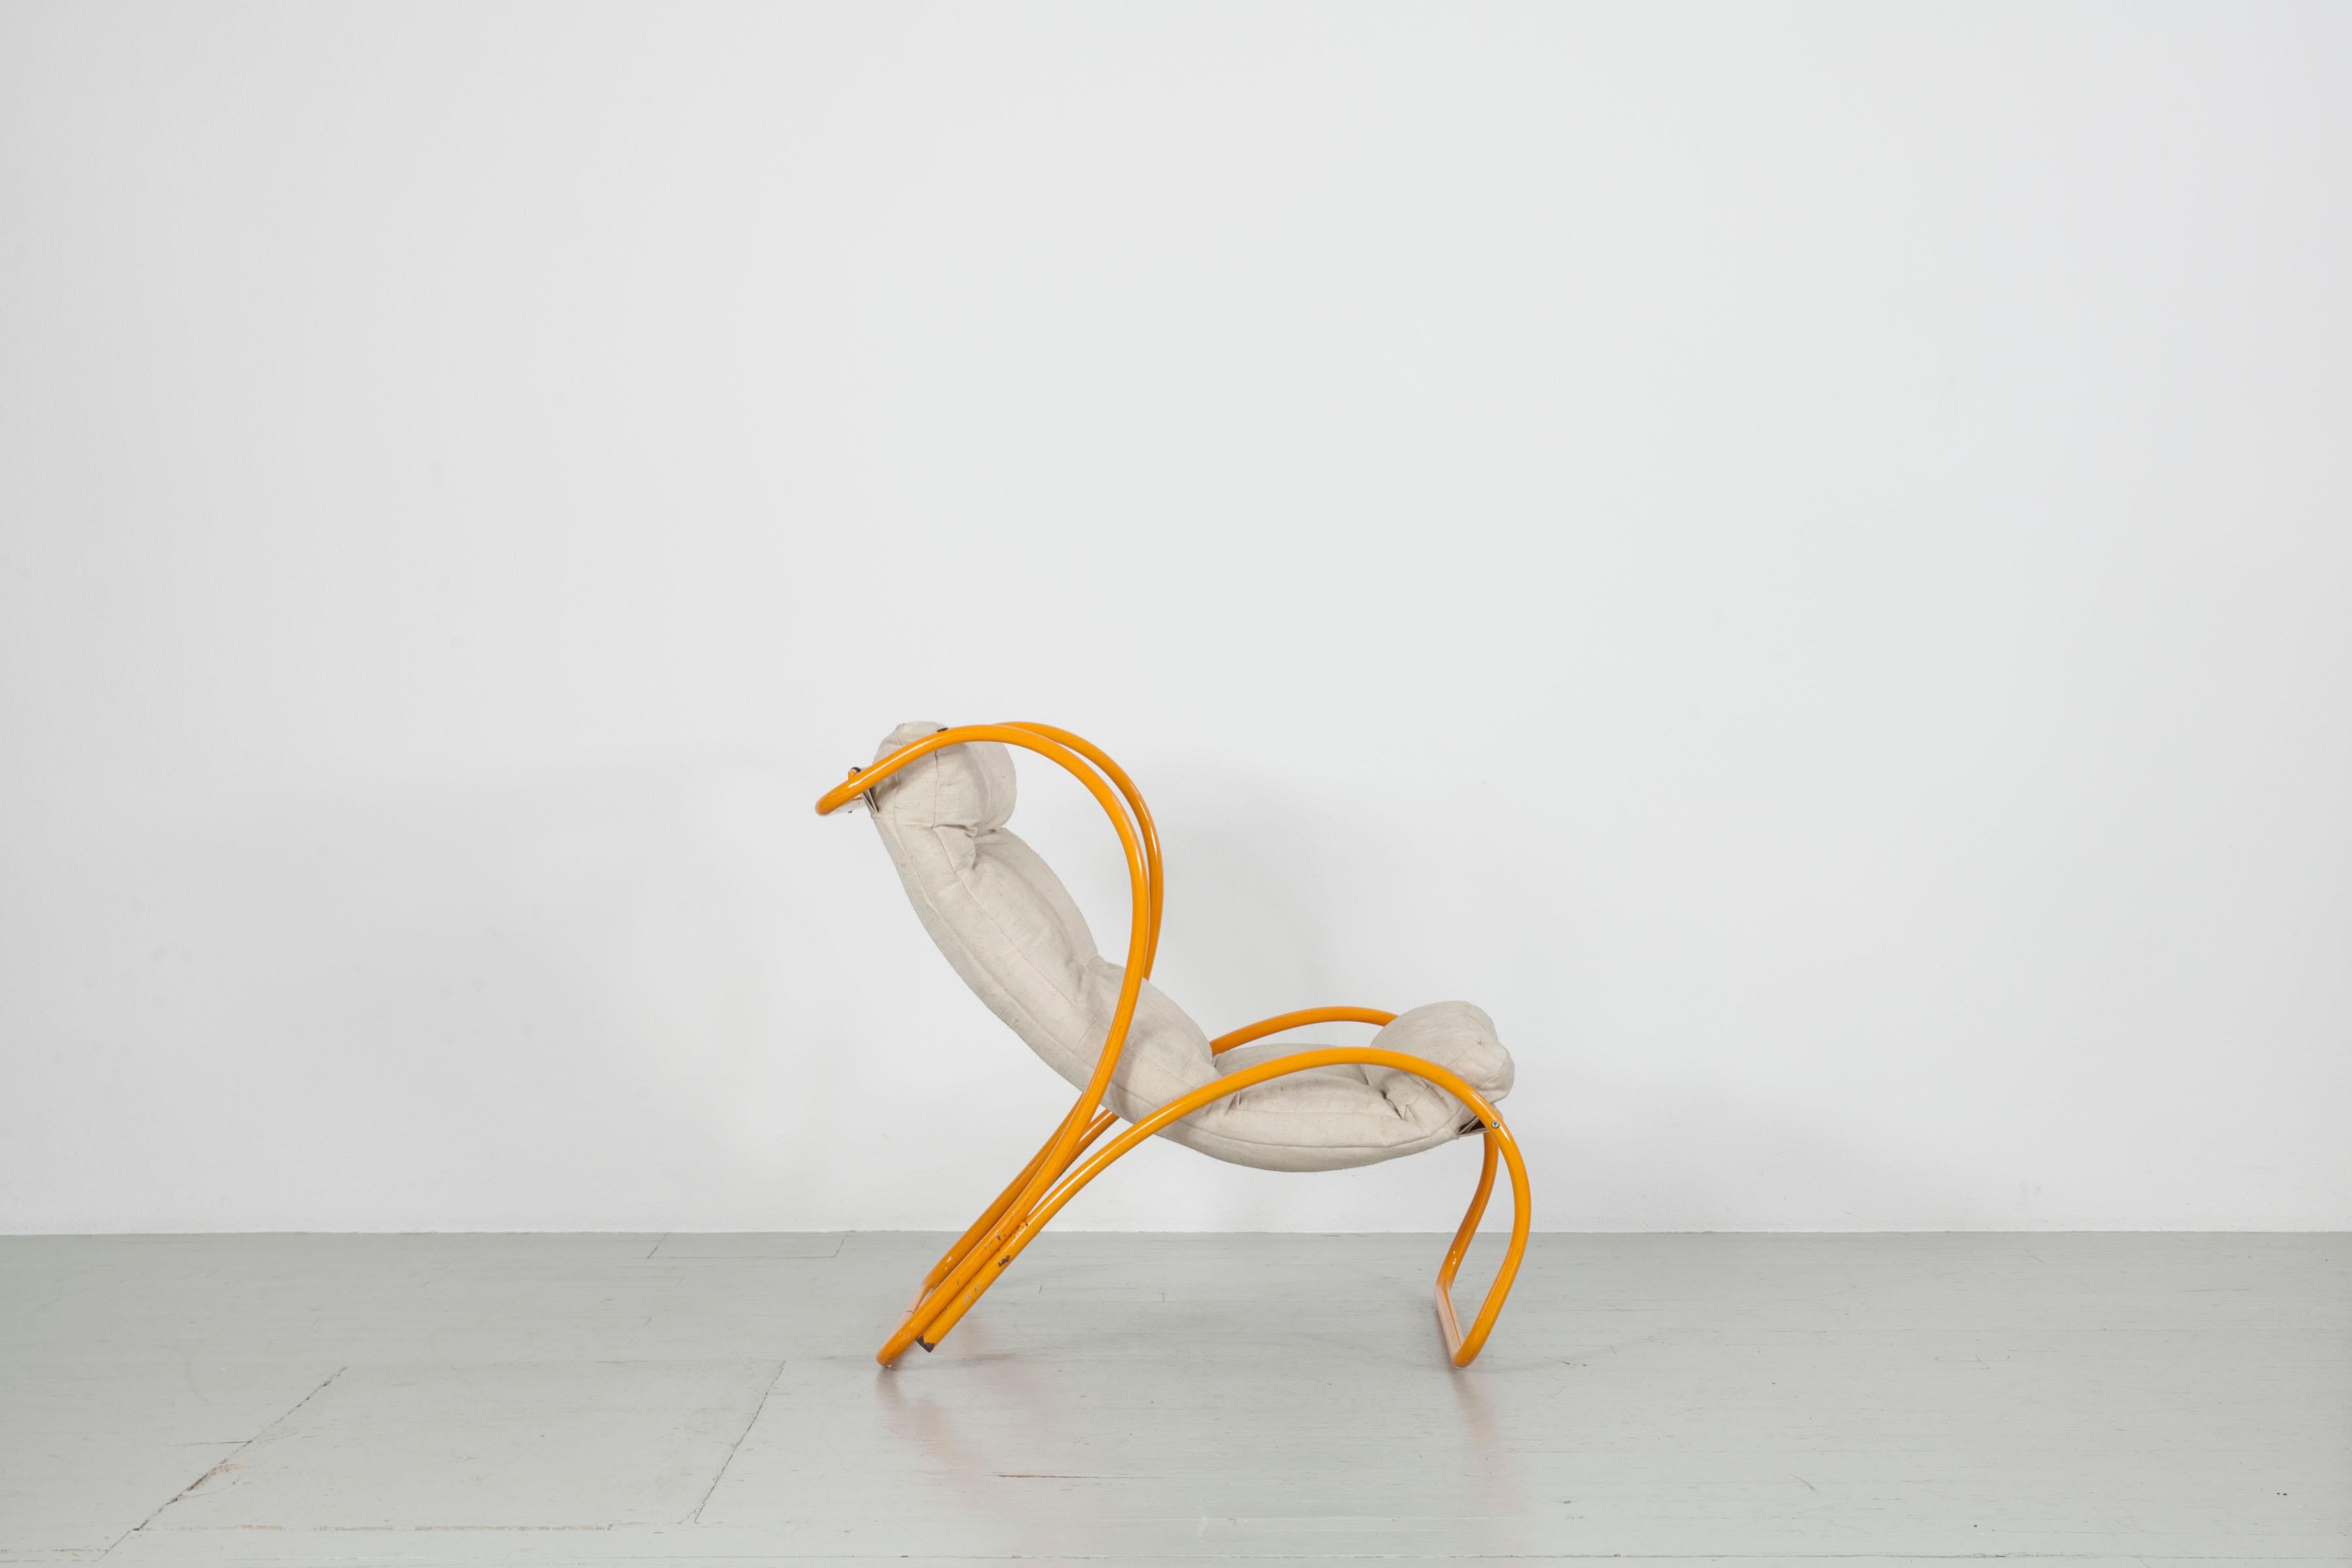 Dieser italienische Sessel wurde in den 1970er Jahren hergestellt. Das runde, gebogene, gelb emaillierte Stahlrohr dient als Rahmen für die schlichte Leinenpolsterung. Das Möbelstück ist in einem guten Originalzustand mit ein paar Flecken auf dem